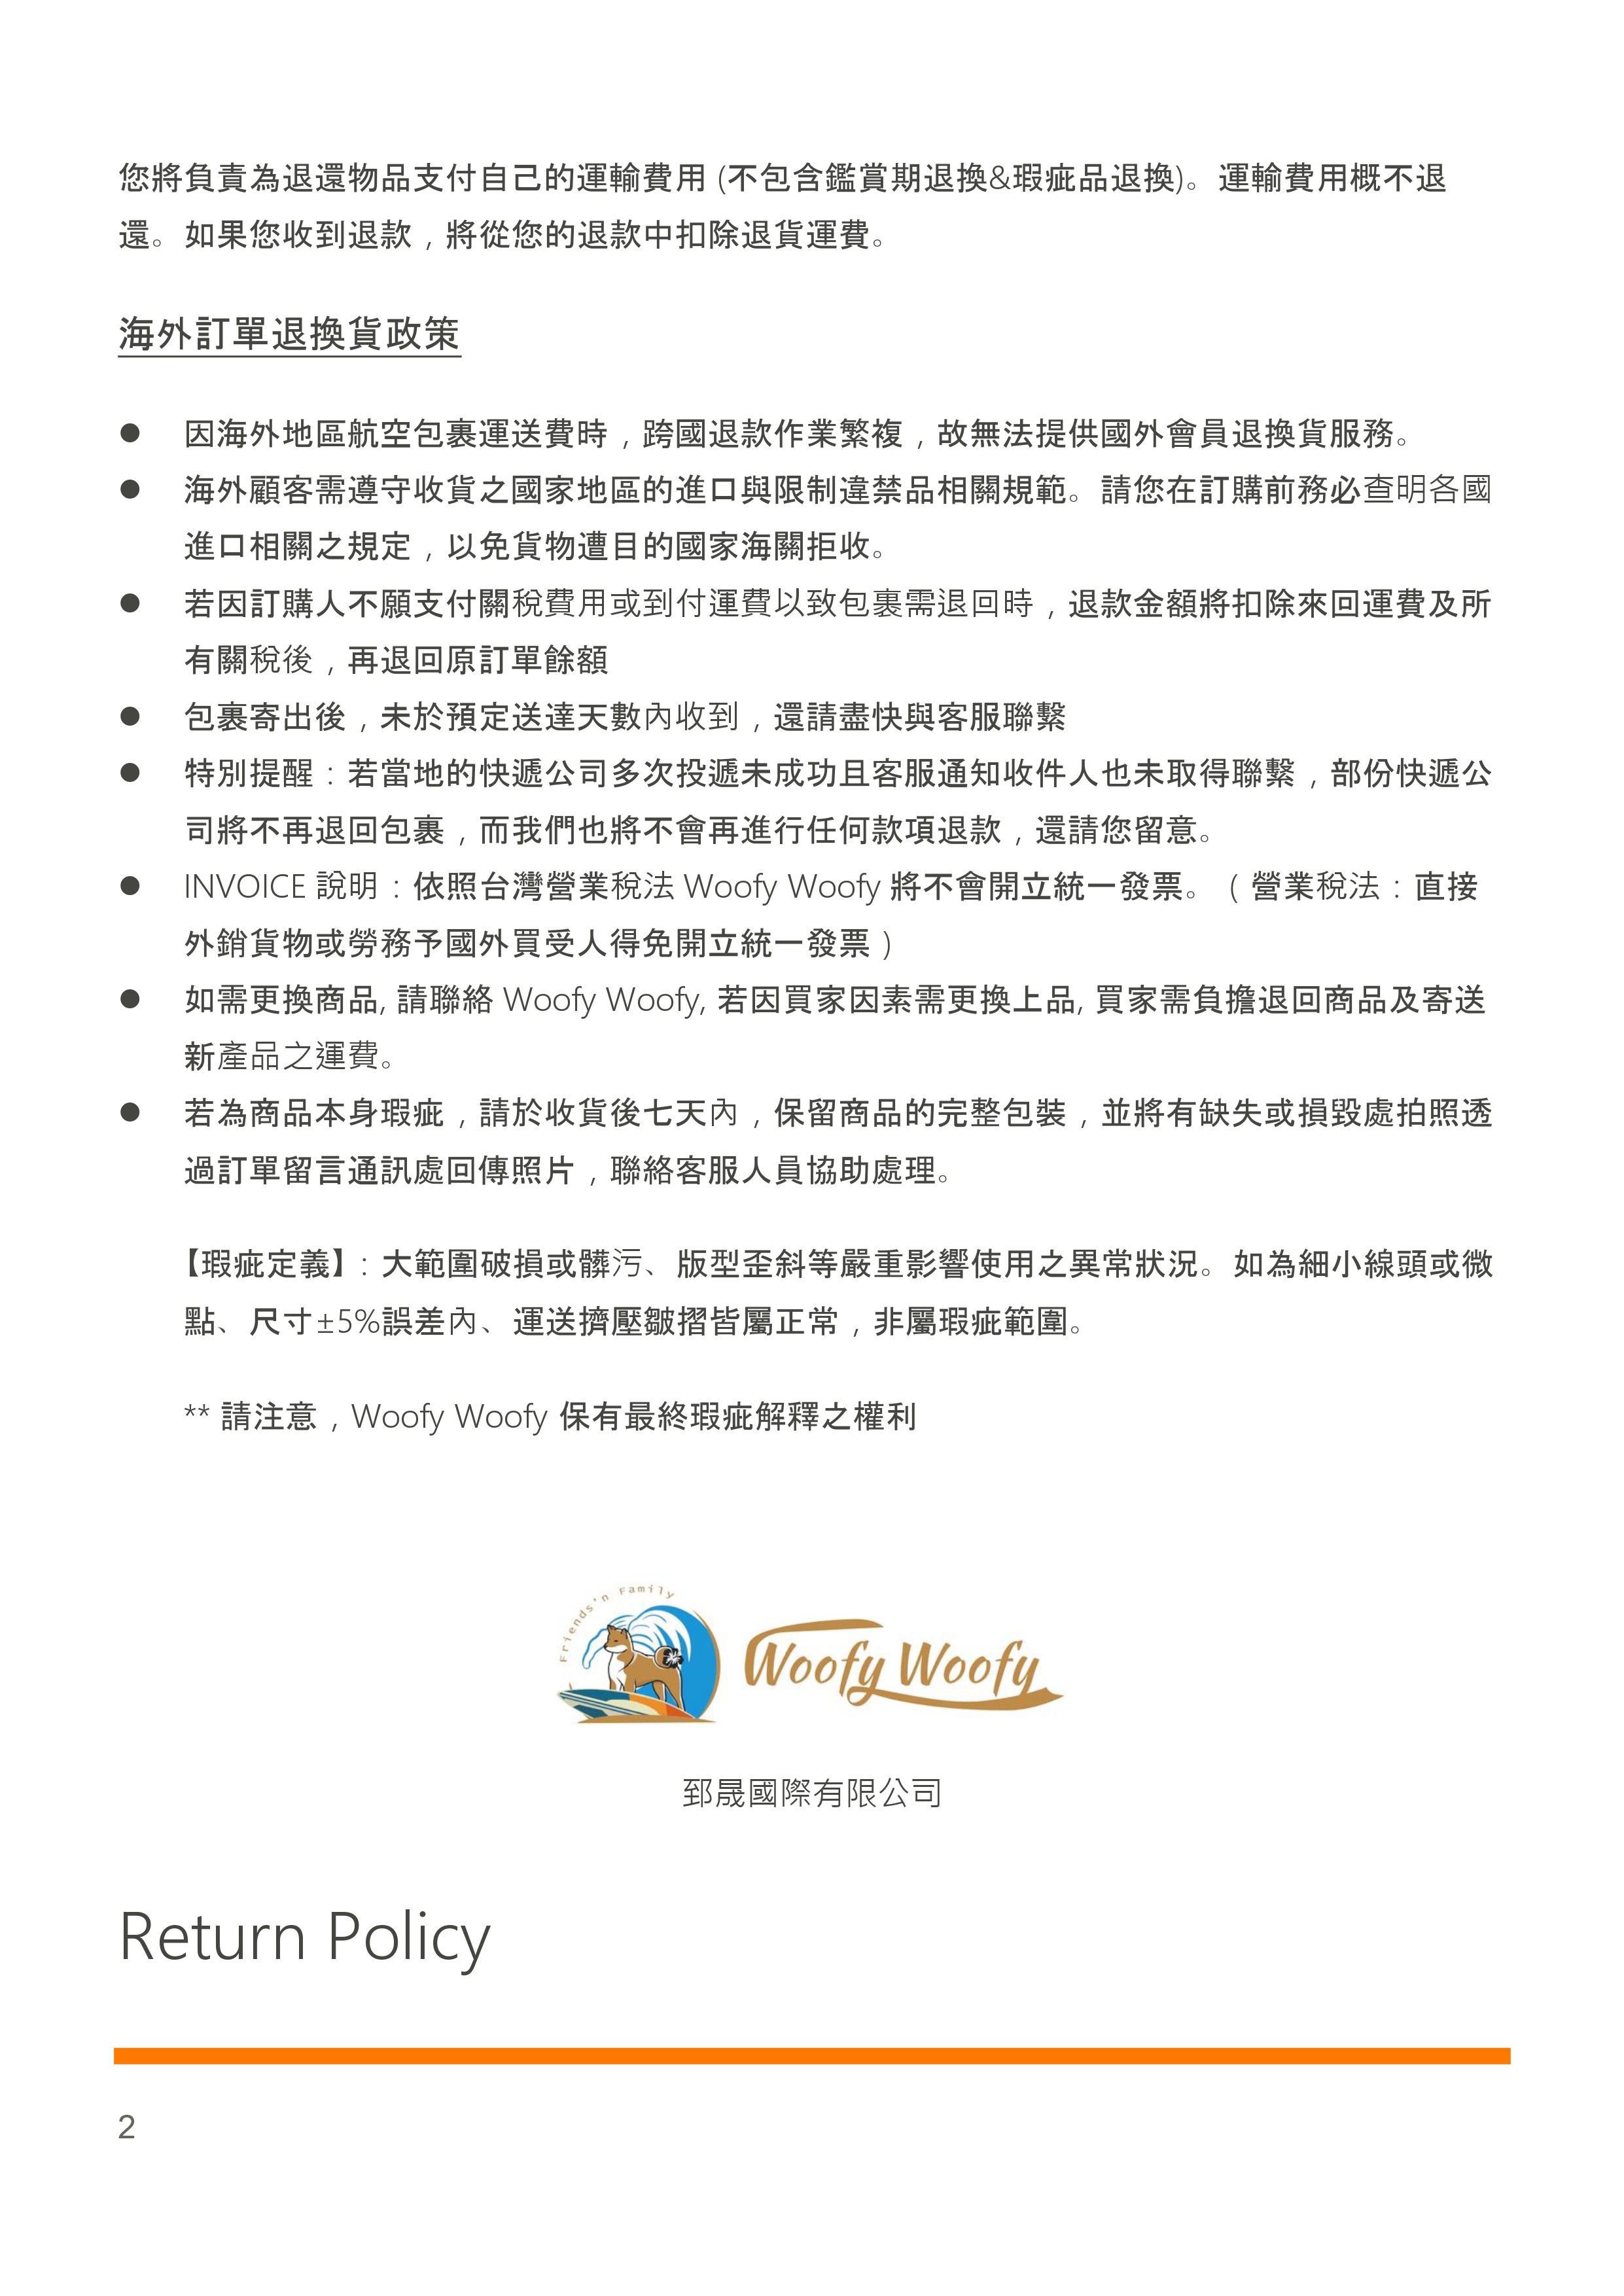 退換貨政策-郅晟_page-0002